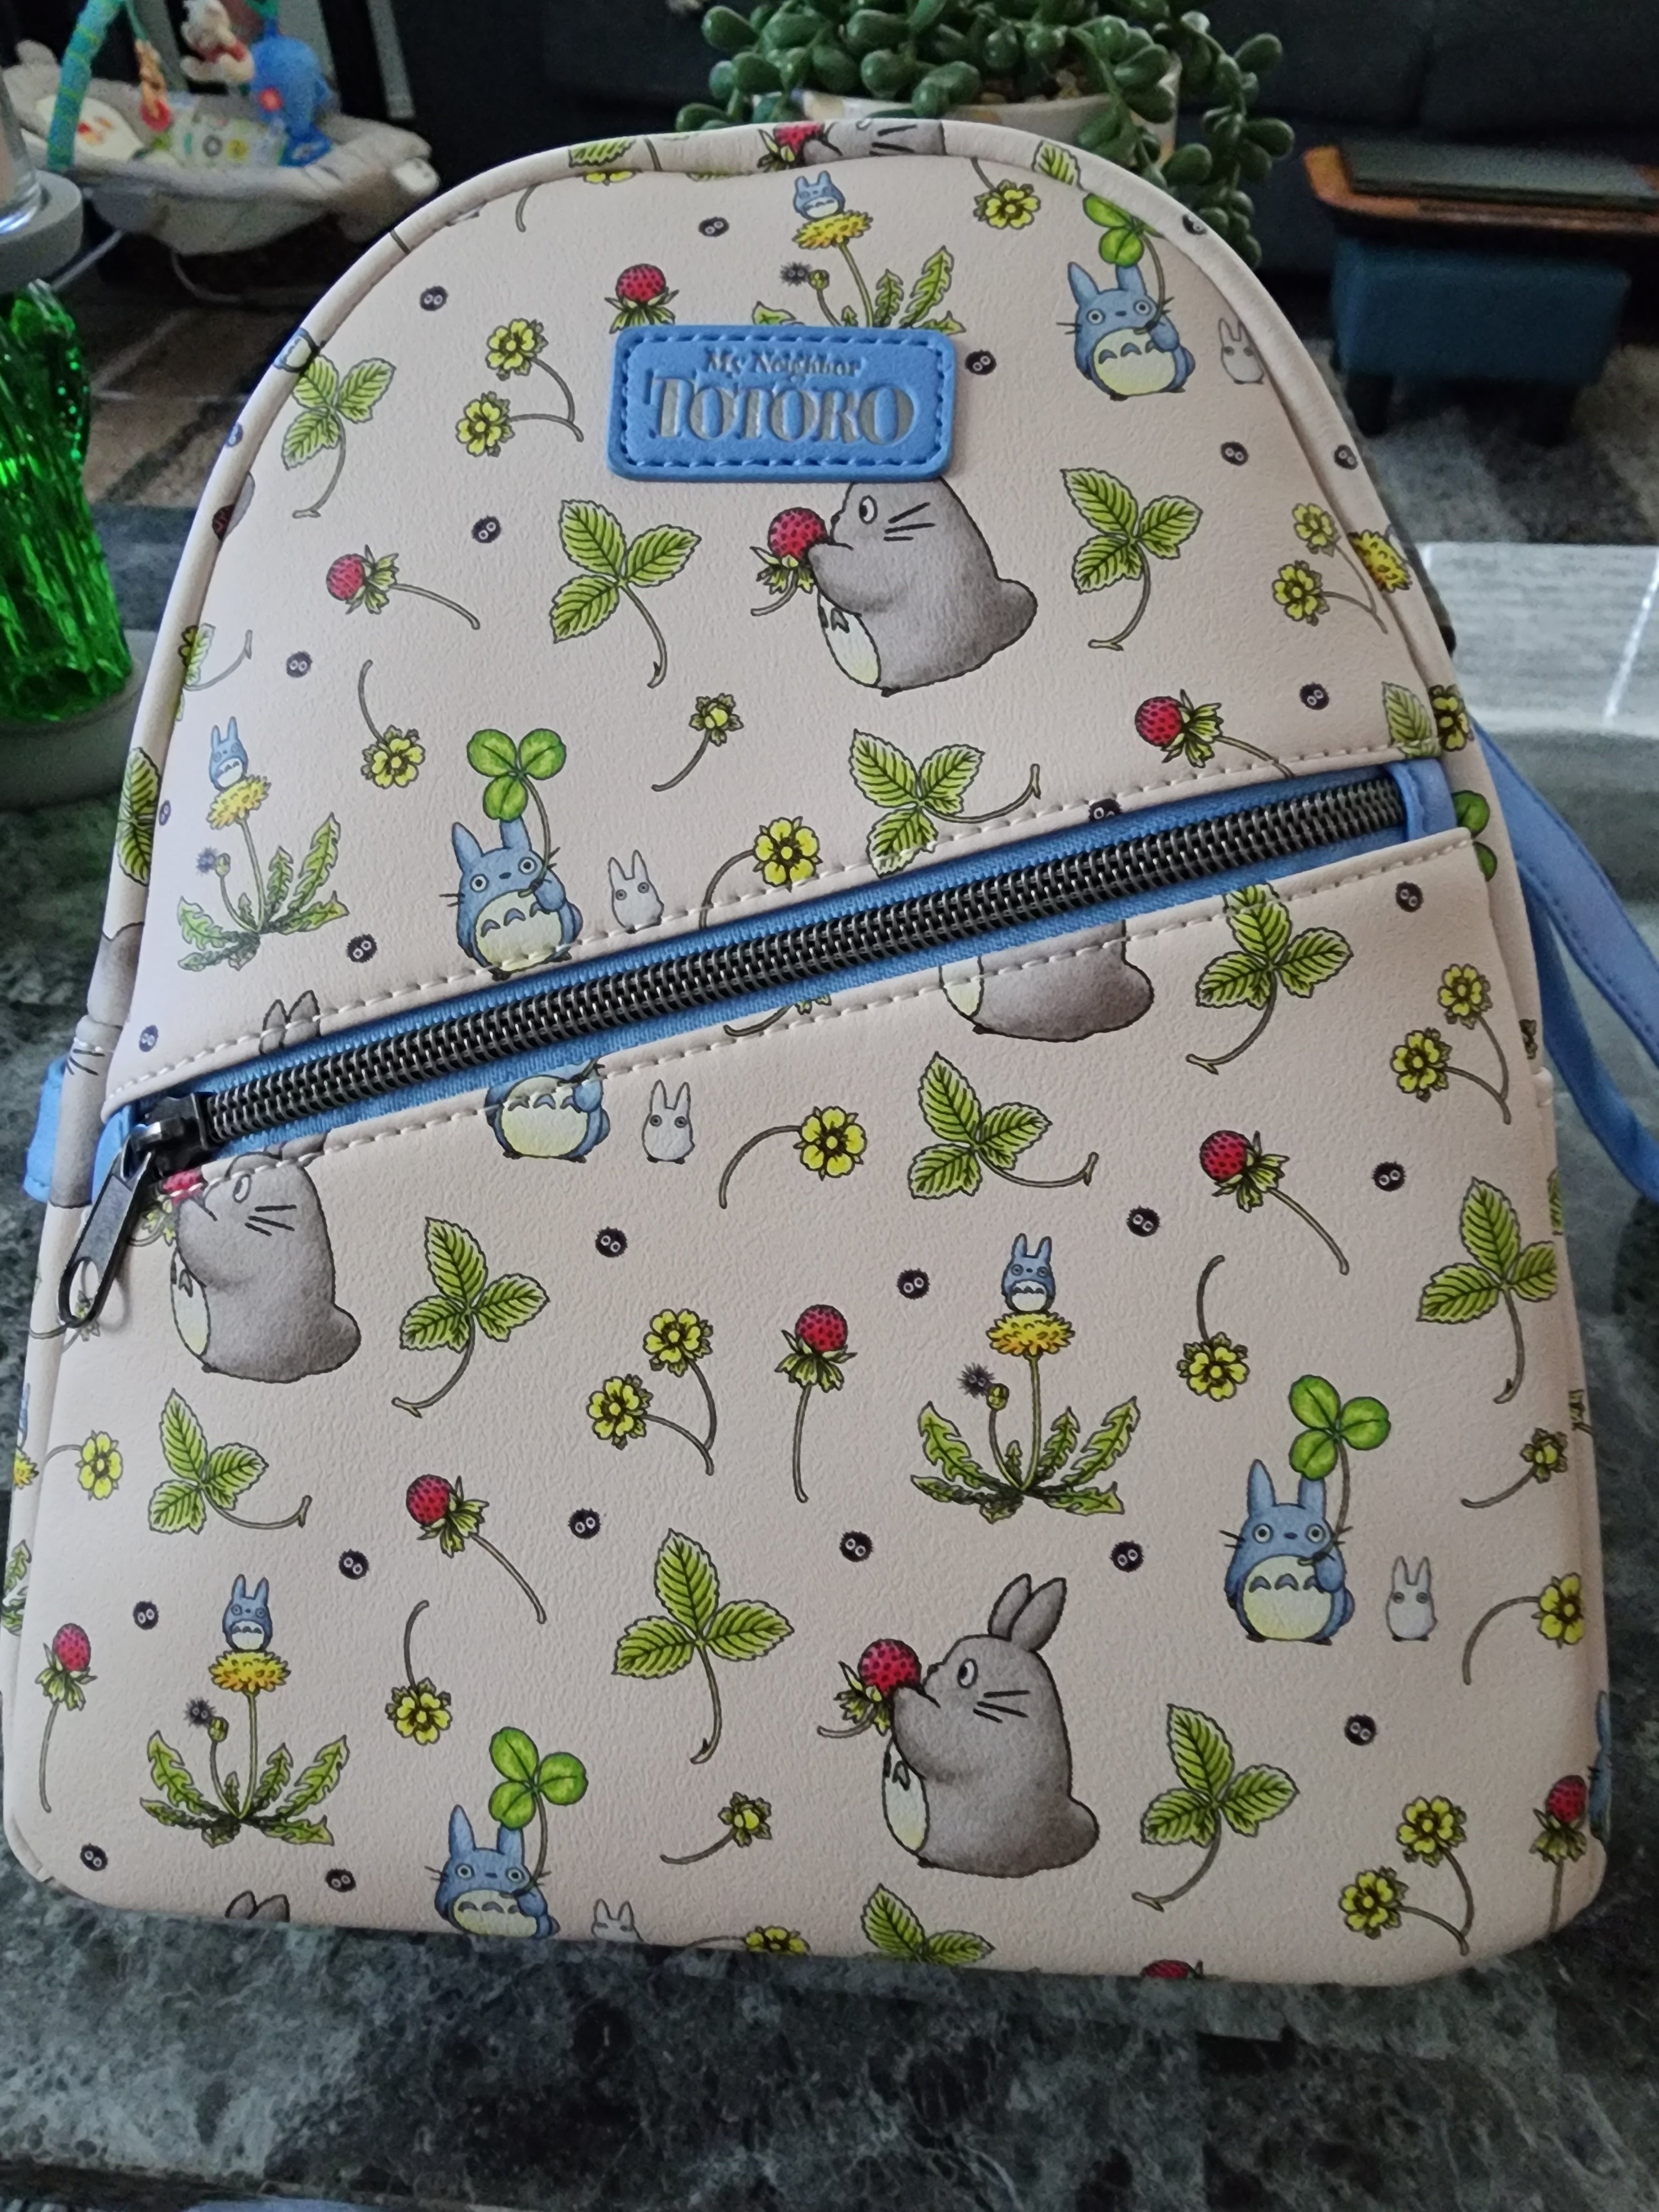 Totoro Bag